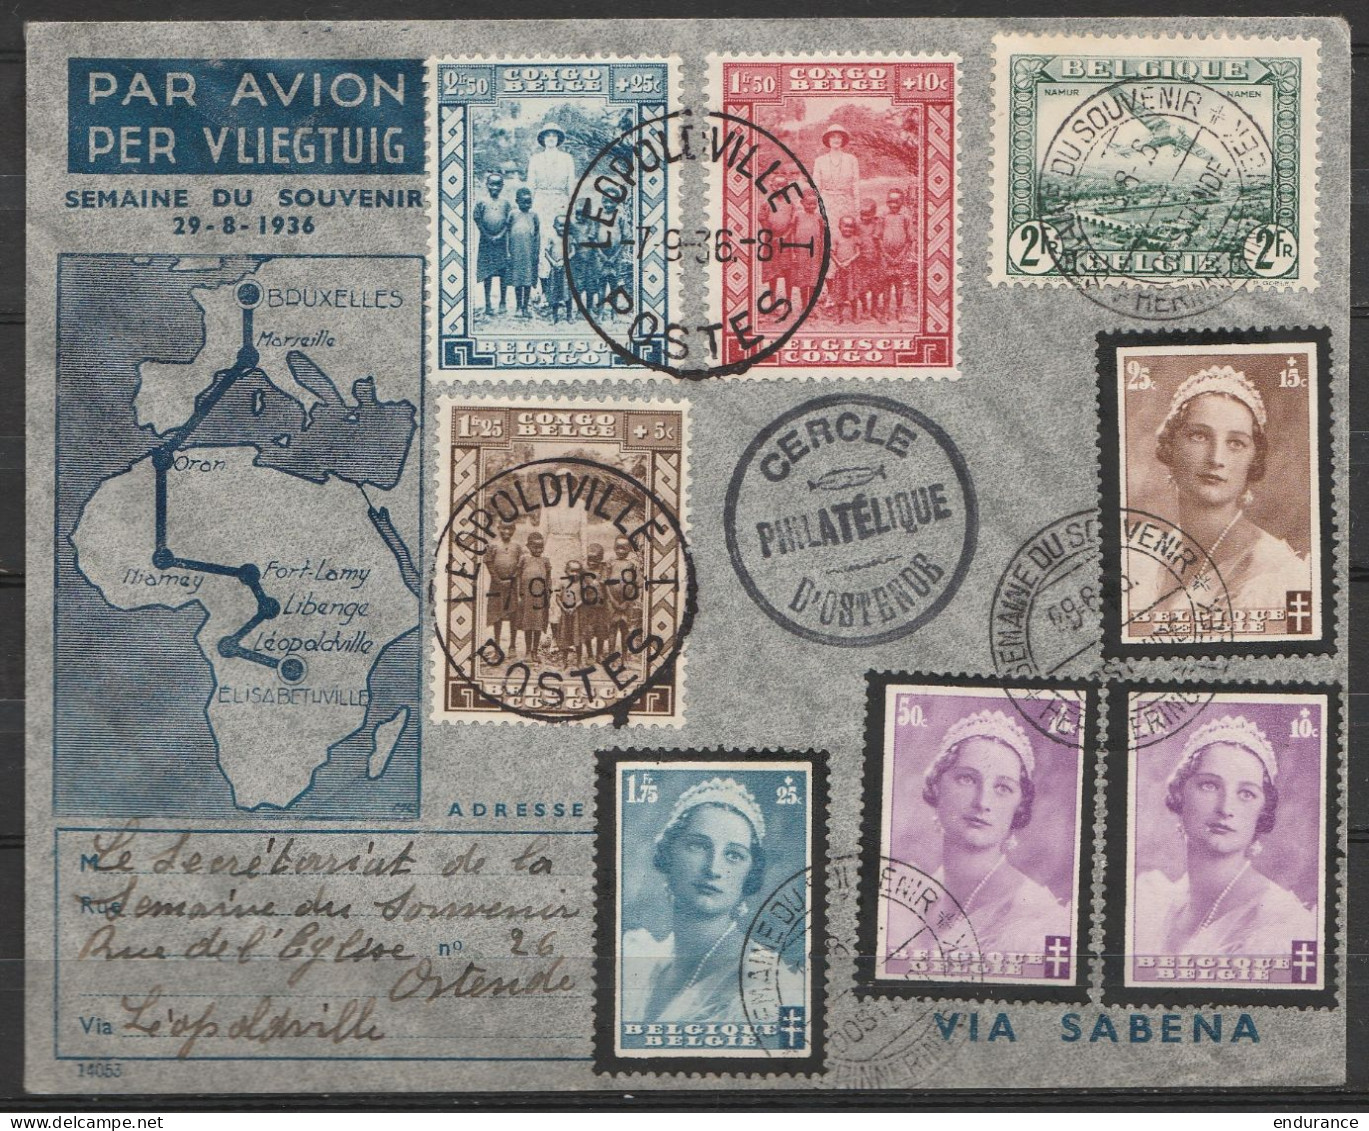 L. Par Avion "Semaine Du Souvenir" Affr. N°412+417+414x2 + PA3 Càd "SEMAINE DU SOUVENIR /29-8-1936/ OSTENDE" Pour E/V Vi - Lettres & Documents